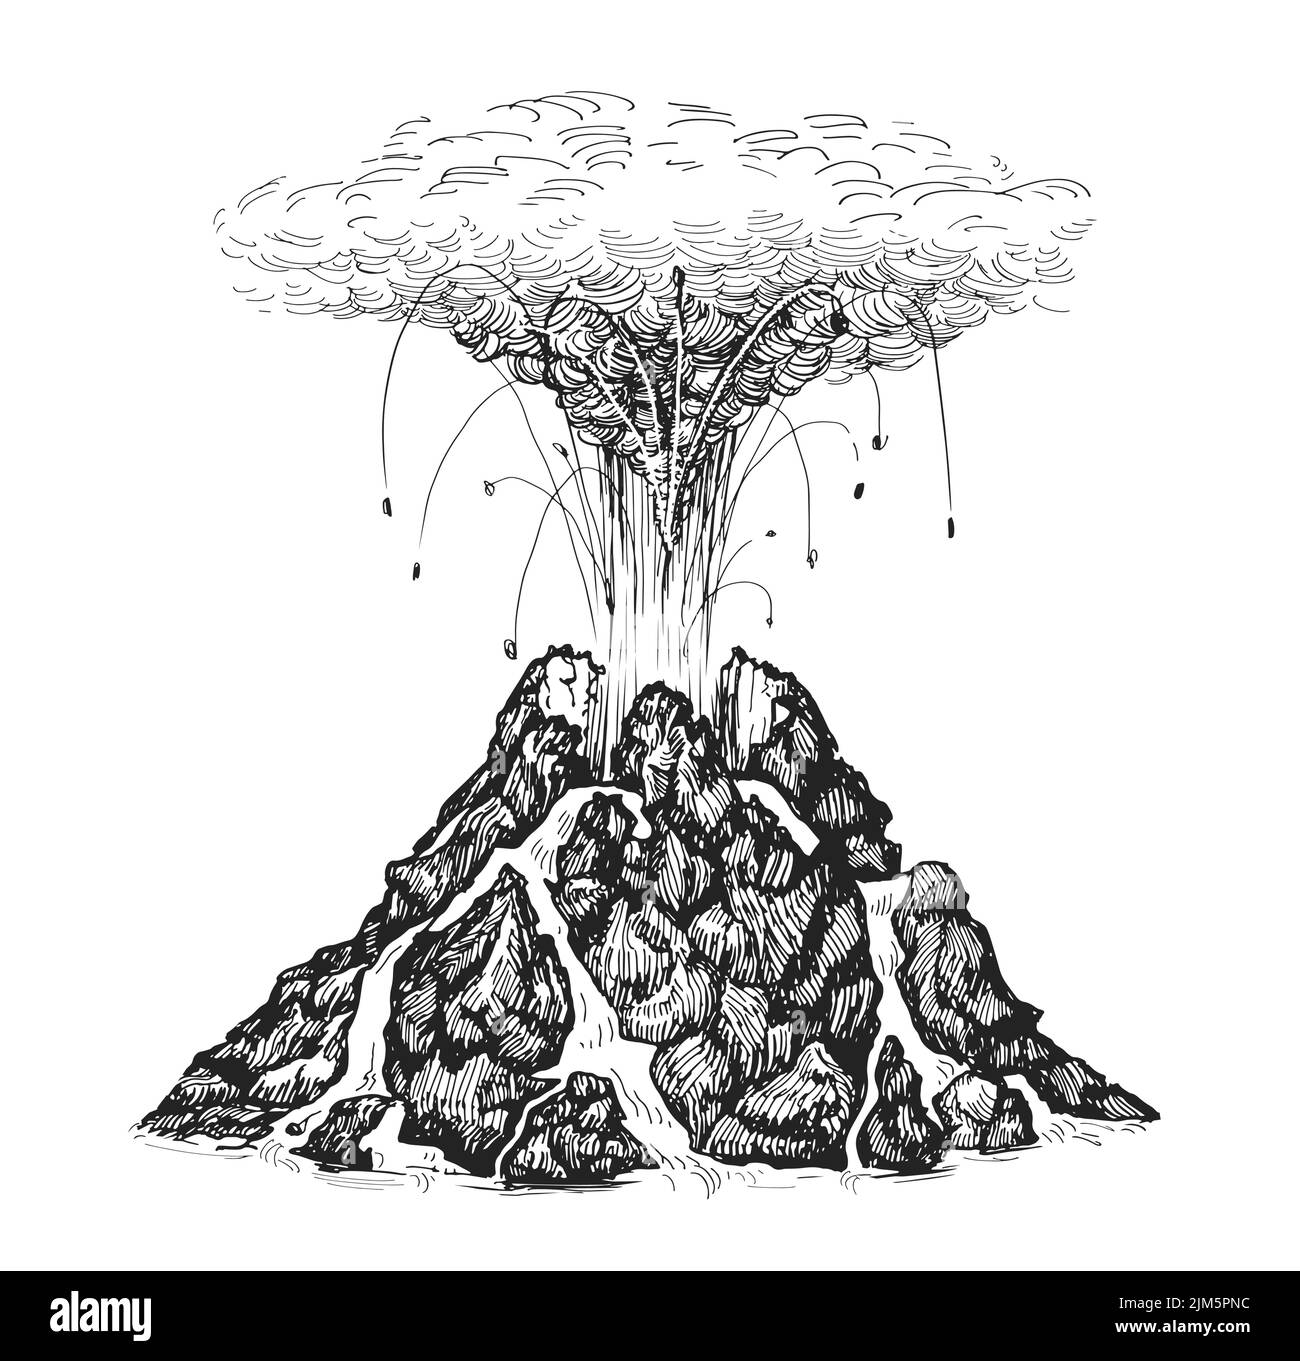 Vulcano attivo che sputano la lava. Eruzione vulcanica e magma. Illustrazione di schizzo disegnata a mano in stile d'incisione vintage Illustrazione Vettoriale